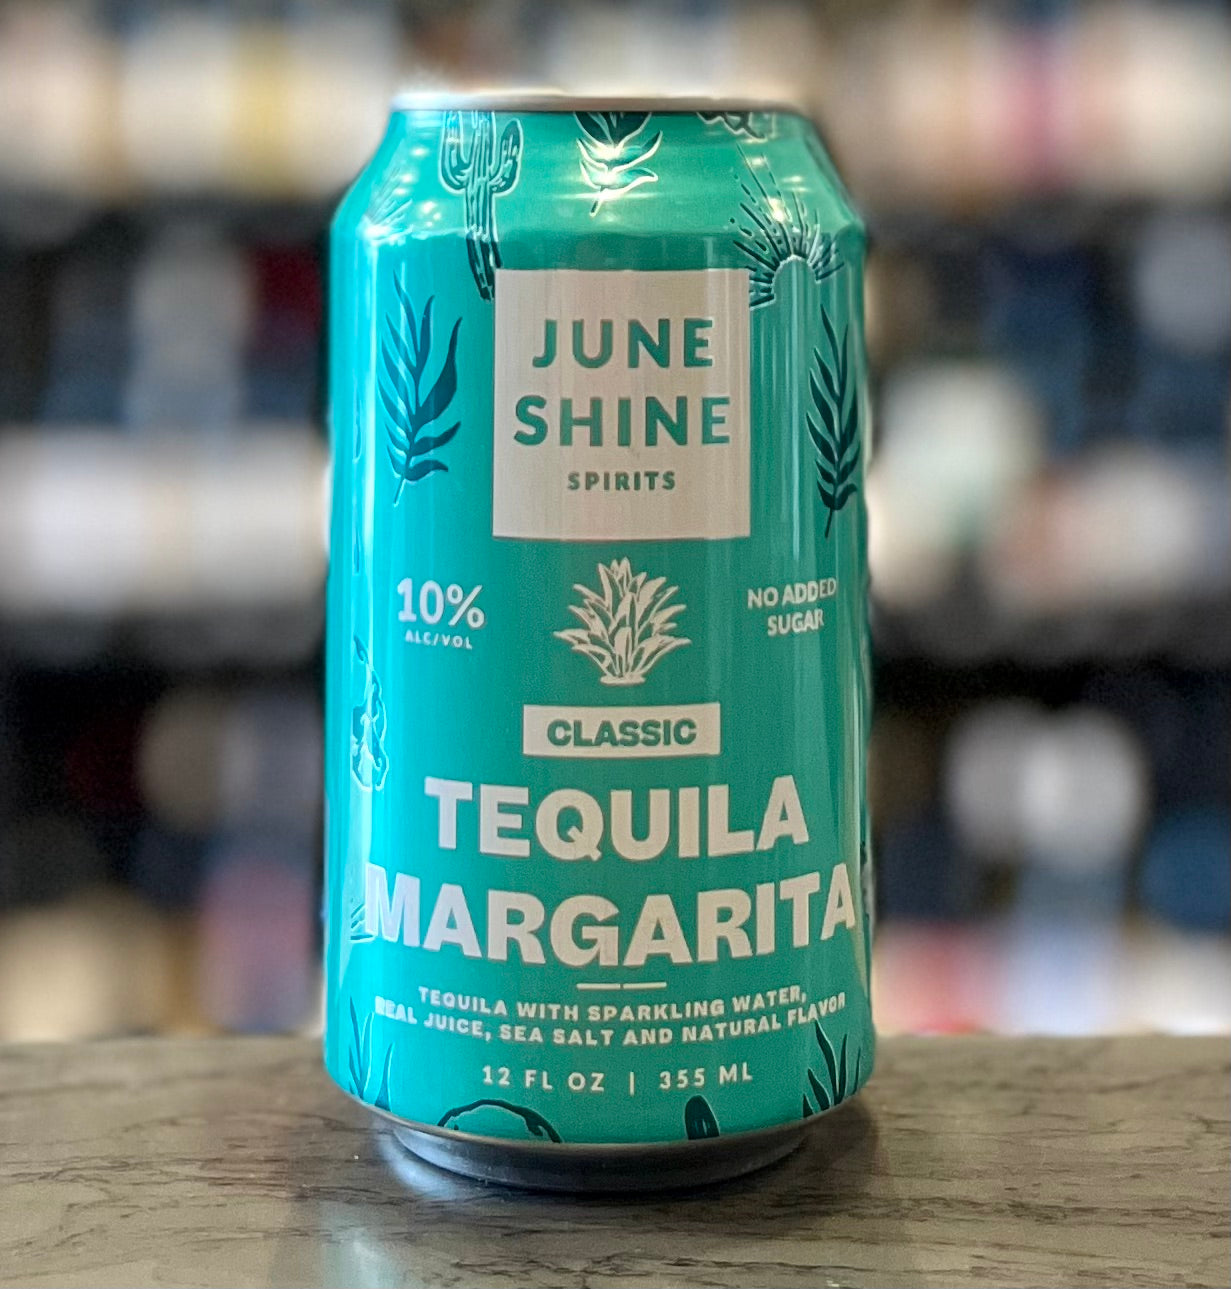 June Shine Tequila Margarita